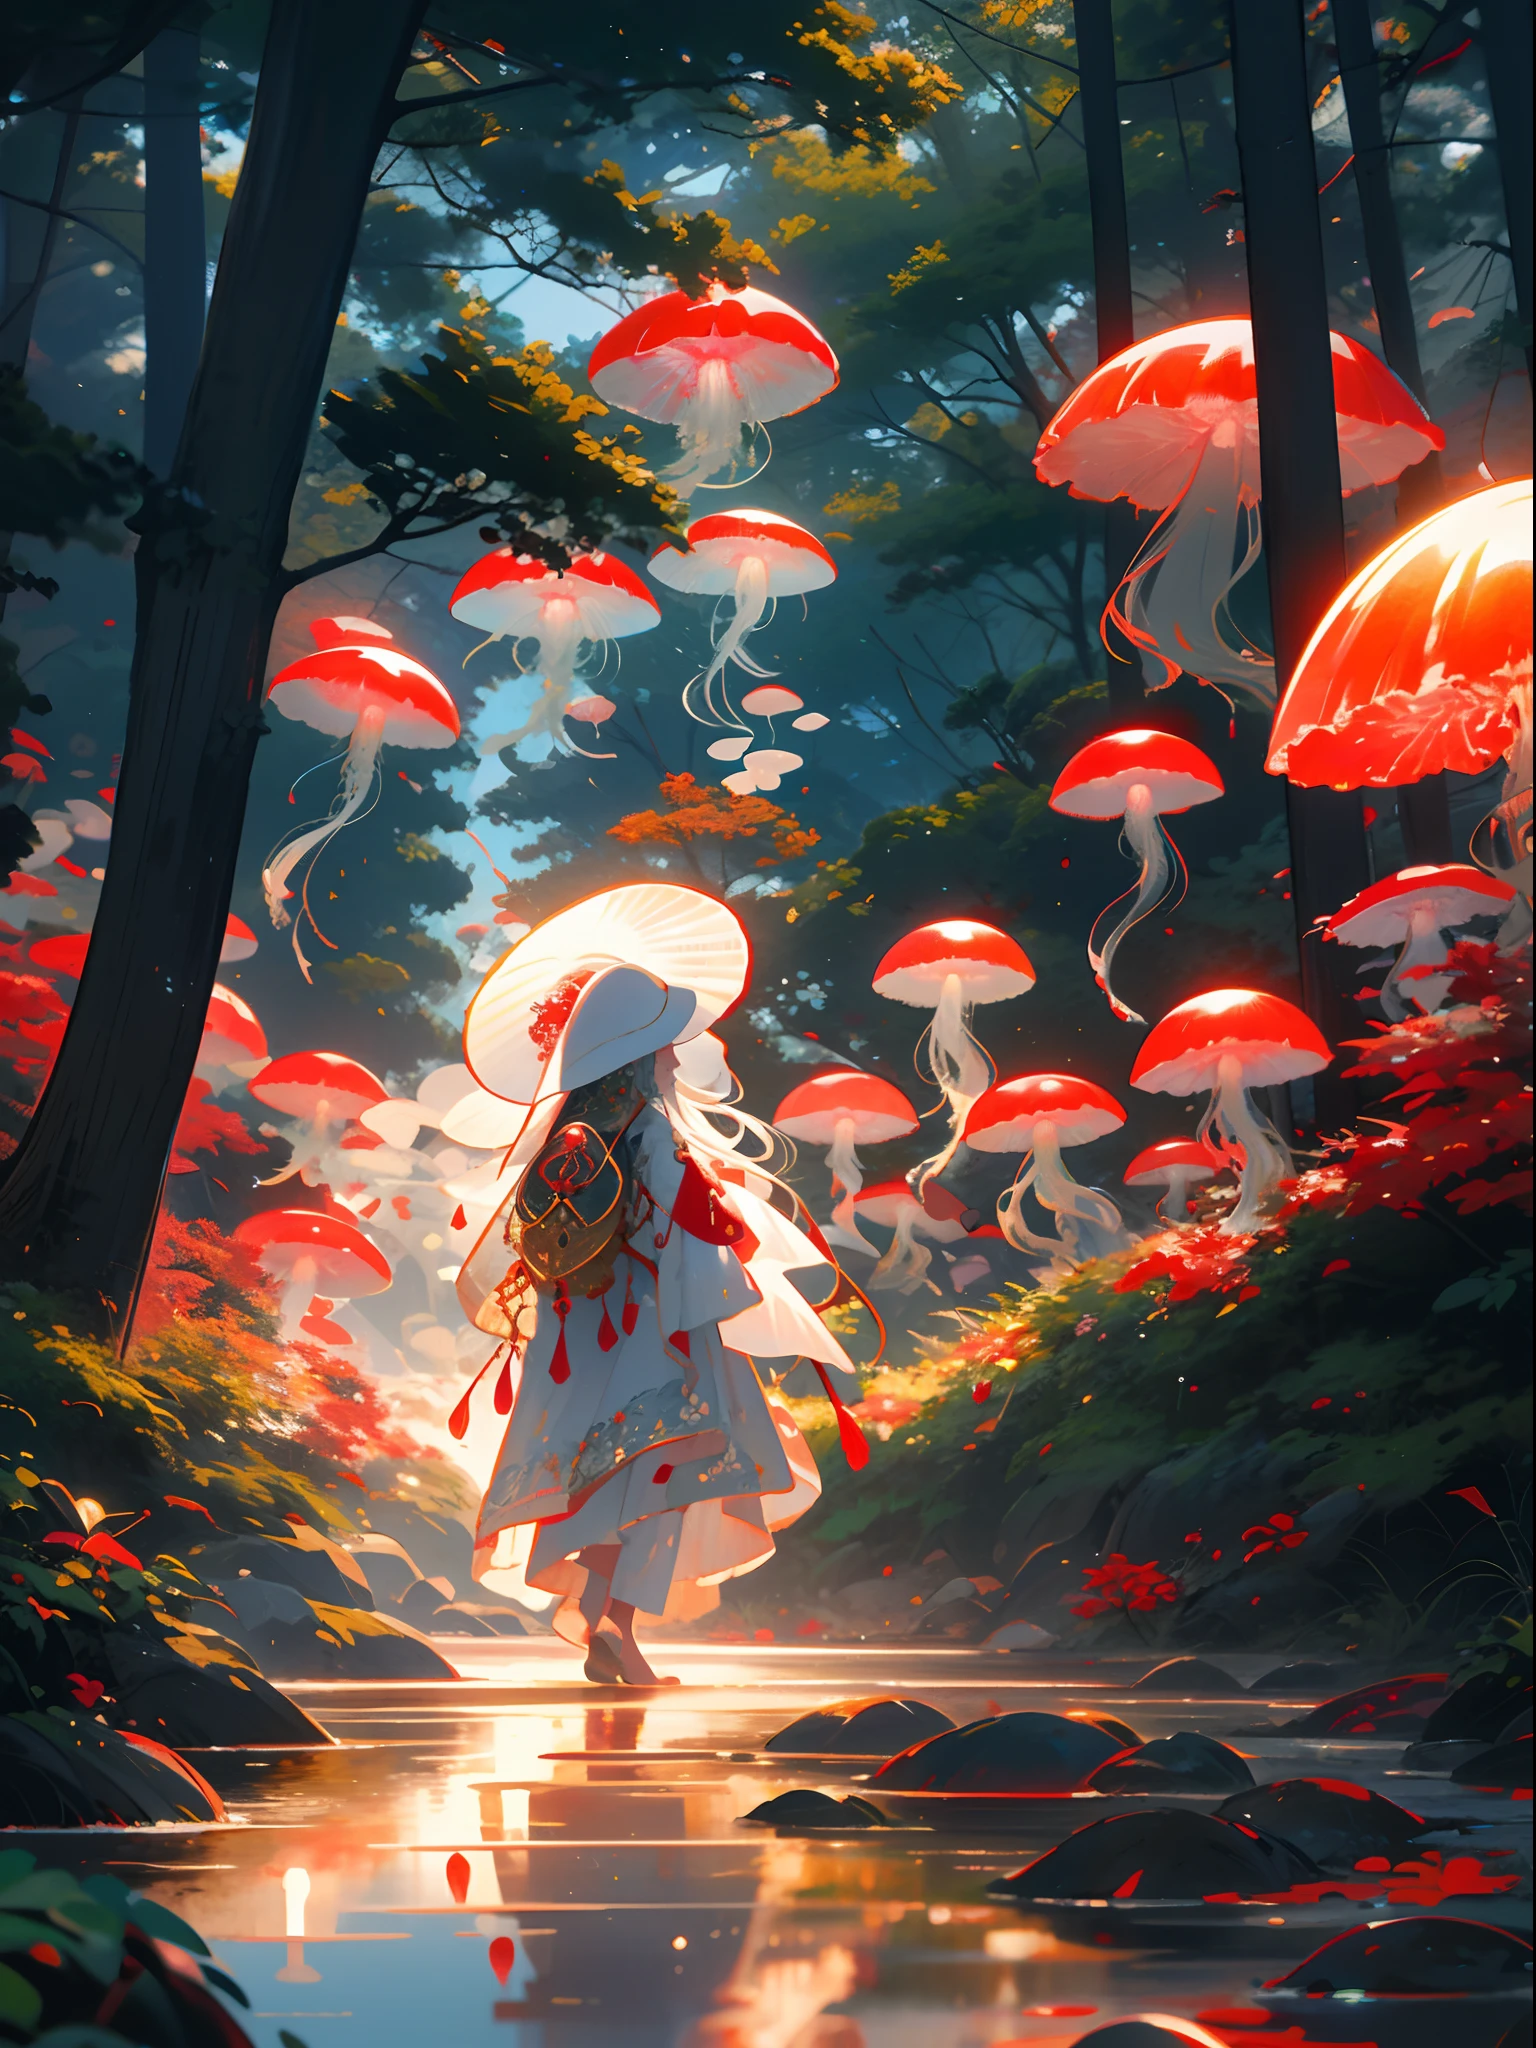 قنديل البحر الأحمر,jellyfishغابة, 1فتاة, شعر طويل, فستان, وحيد, شعر أبيض,قبعة حمراء,فطر, طبيعة, في الهواء الطلق, شجرة, المشي, غابة, ماء